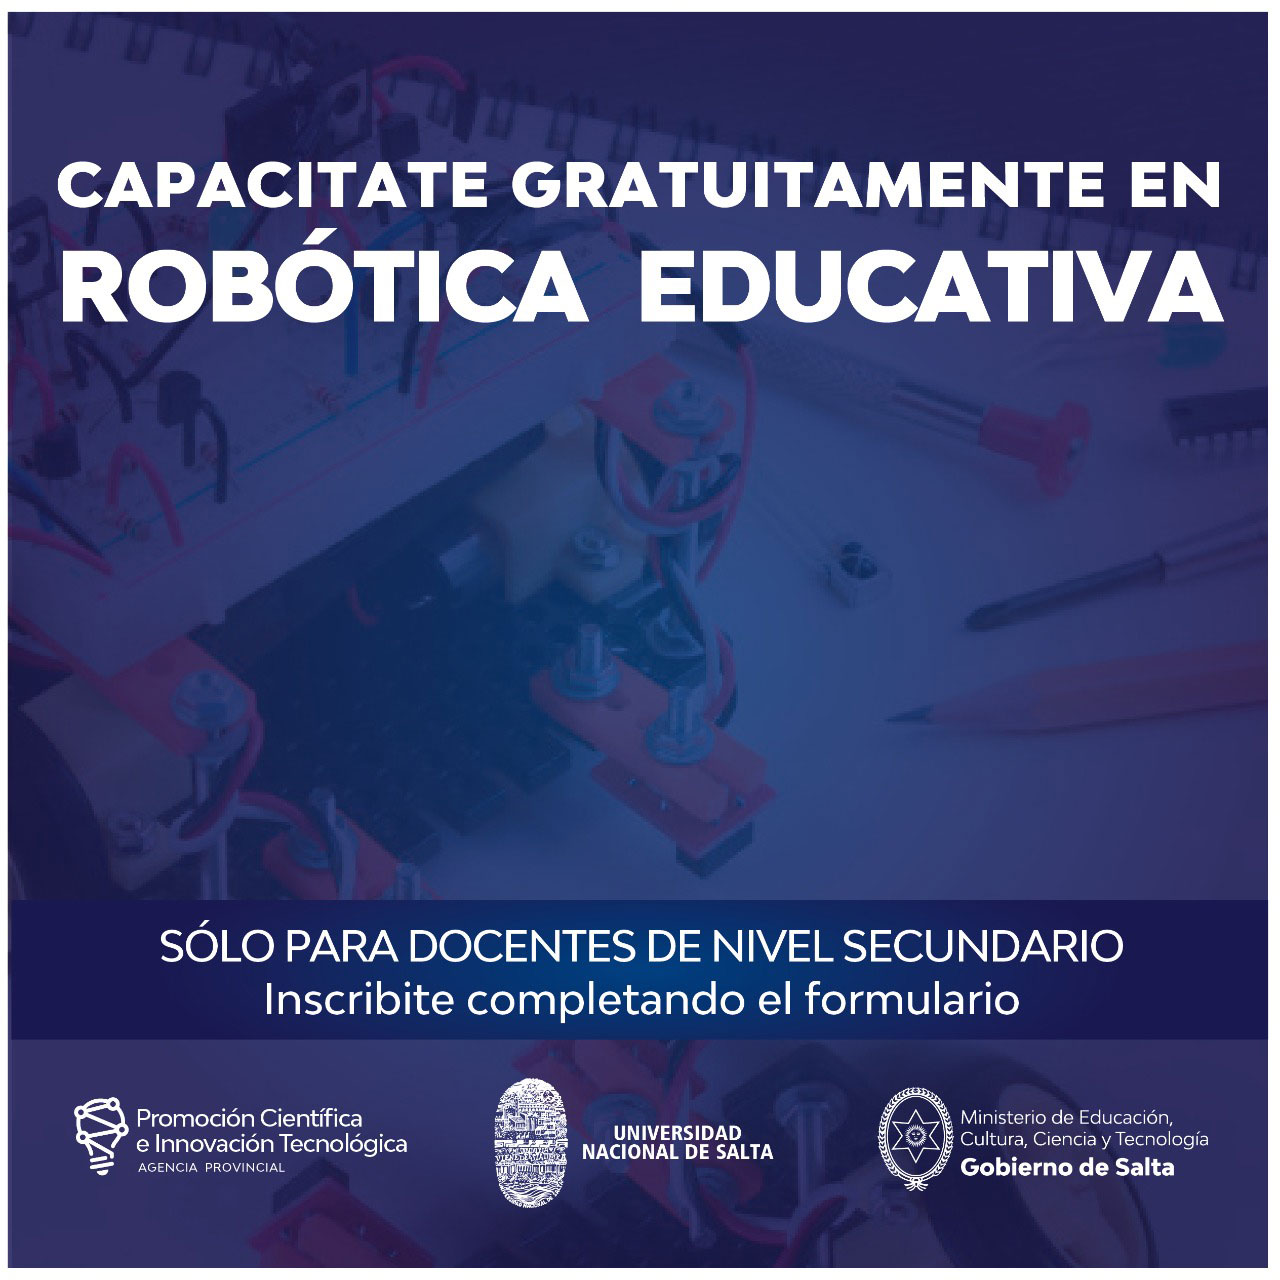 Capacitación en Robótica Educativa autogestionada para docentes de nivel secundario